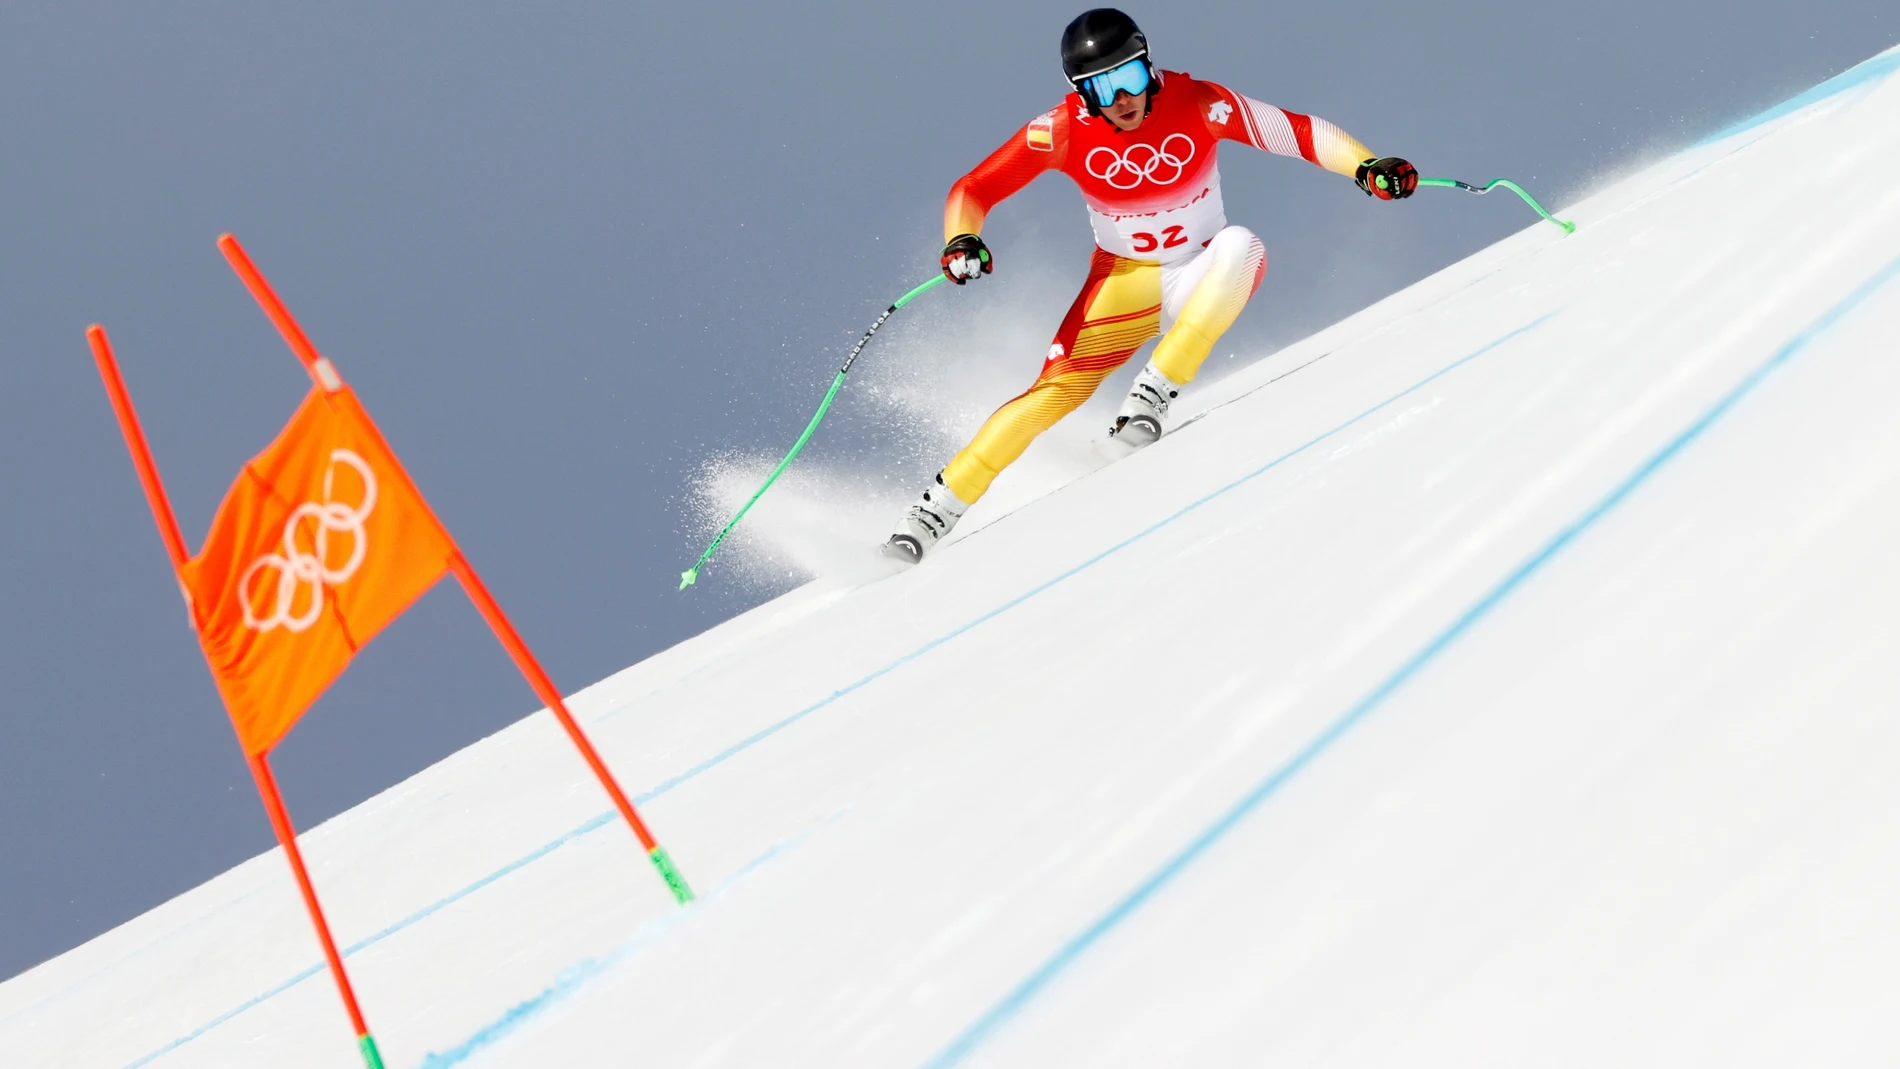 El vasco Adur Etxezarreta compite en la modalidad de descenso de esquí alpino en los Juegos Olímpicos de Invierno Pekín 2022.